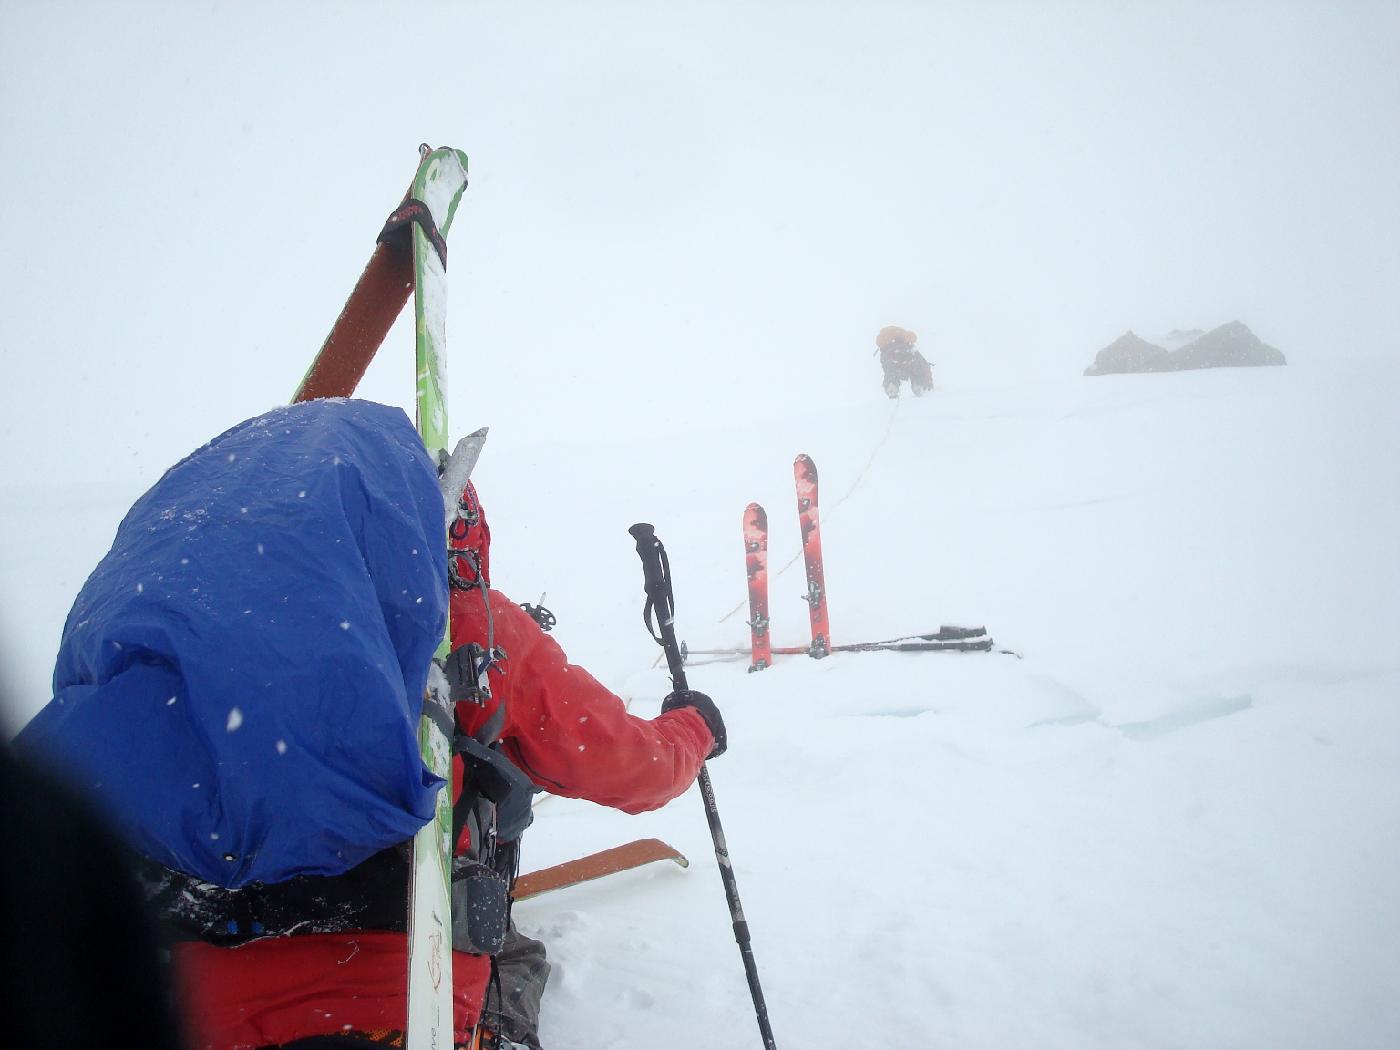 DSC03820.jpg - Monte  la Fuorcla dal Cunfin, dans le brouillard et la neige